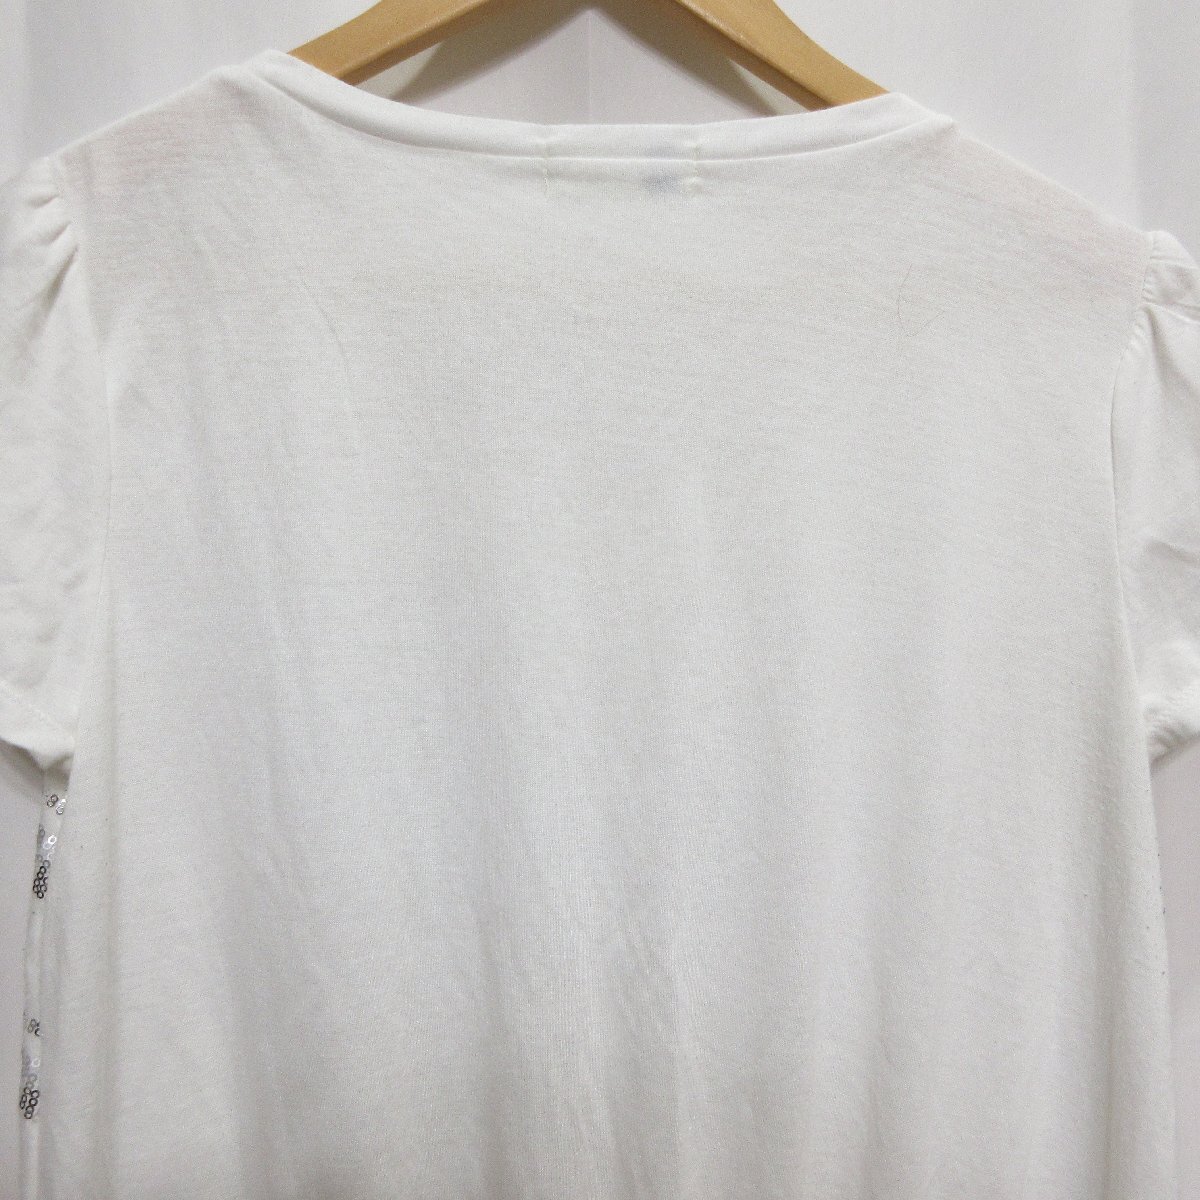 ◆MICHEL KLEIN スパンコール ボーダー柄 半袖 Tシャツ(ホワイト) サイズ42◆USED_画像6